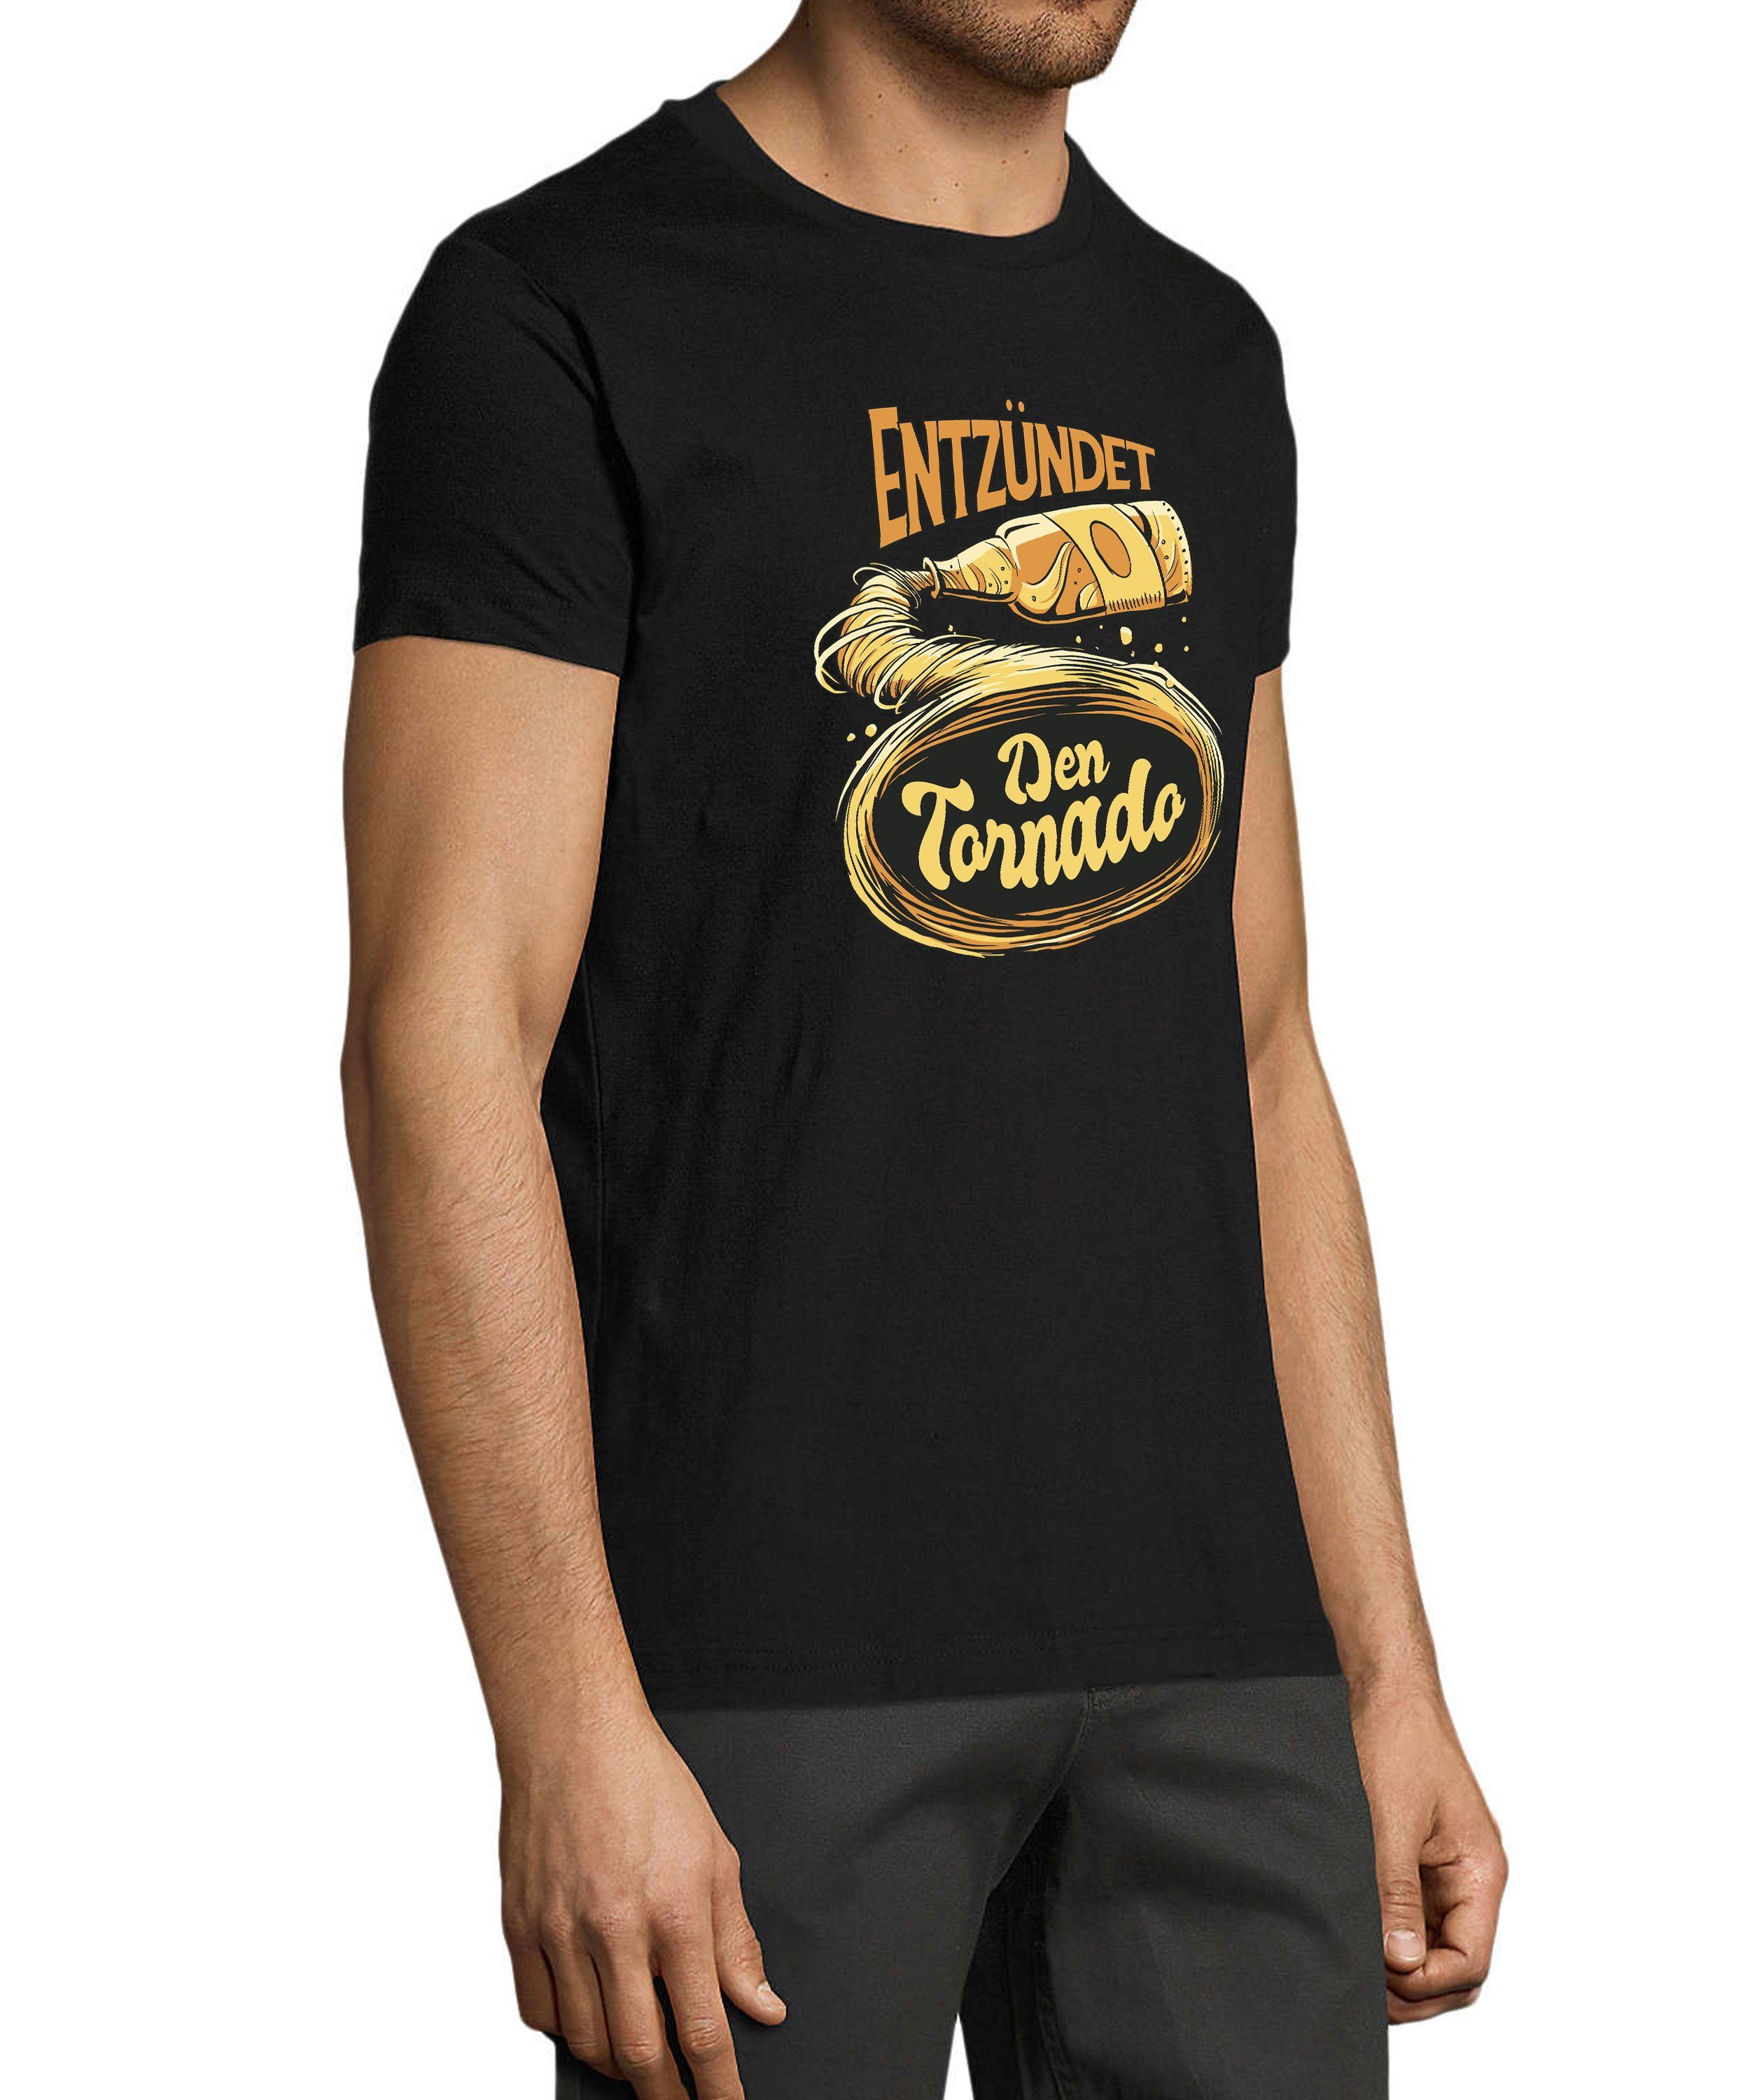 i302 T-Shirt schwarz Fun Regular Shirt Trinkshirt Tornado Herren - Fit, Oktoberfest Print MyDesign24 mit den Aufdruck Entzündet Baumwollshirt